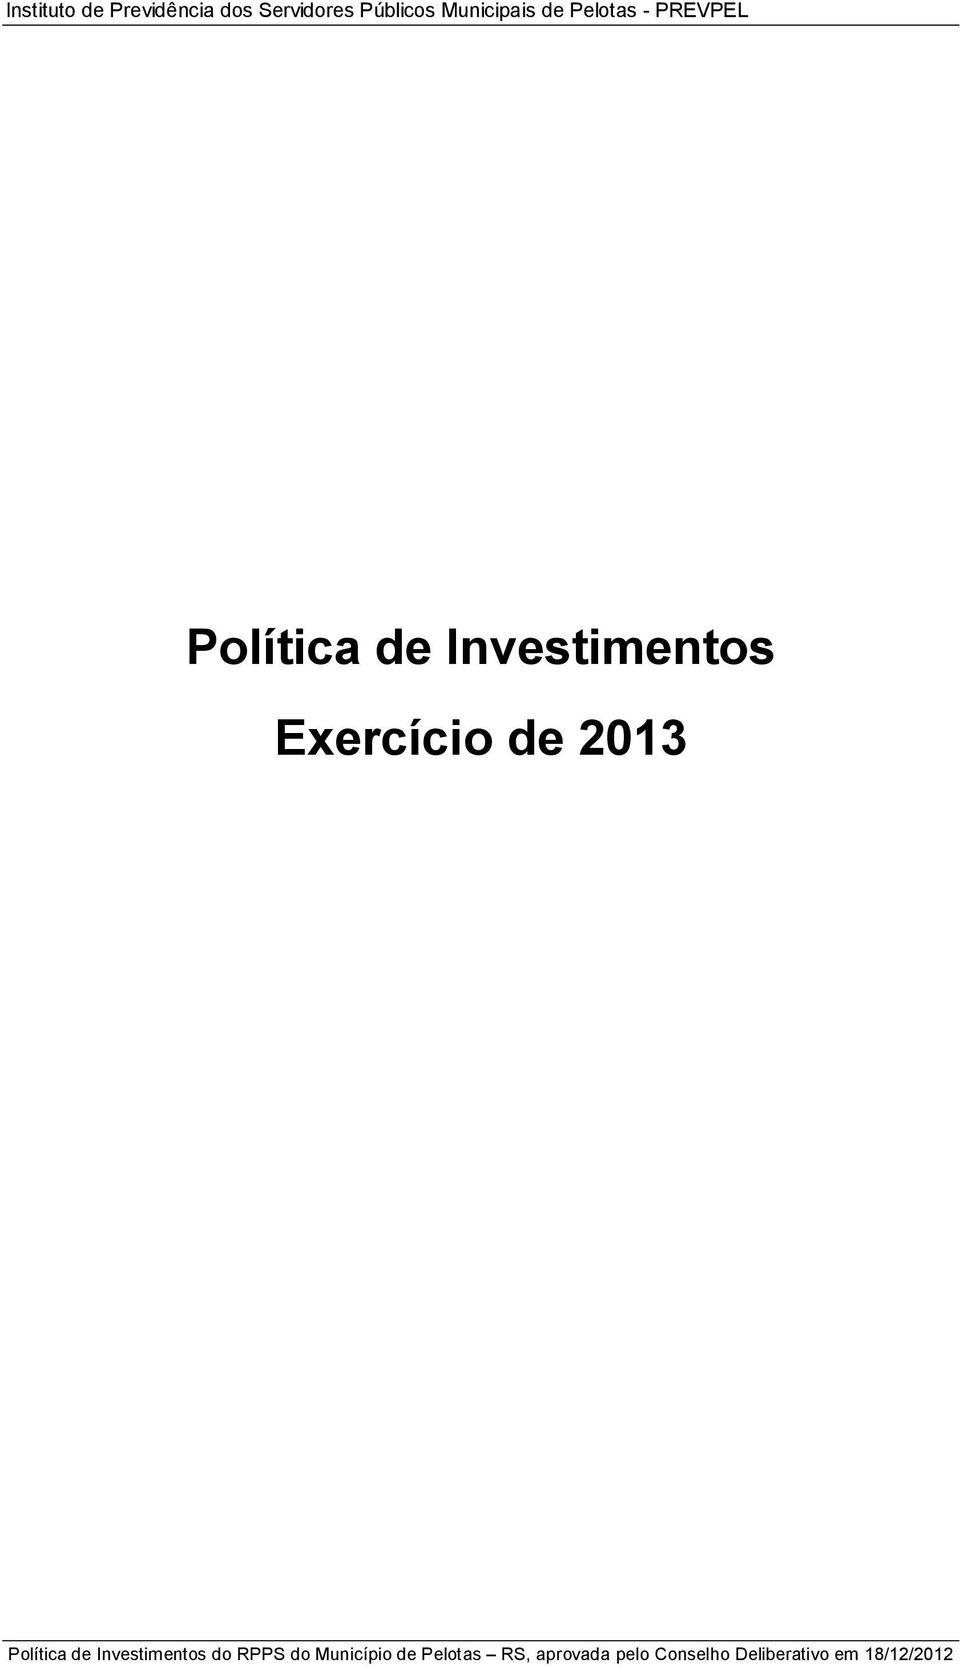 Exercício de 2013 Política de Investimentos do RPPS do